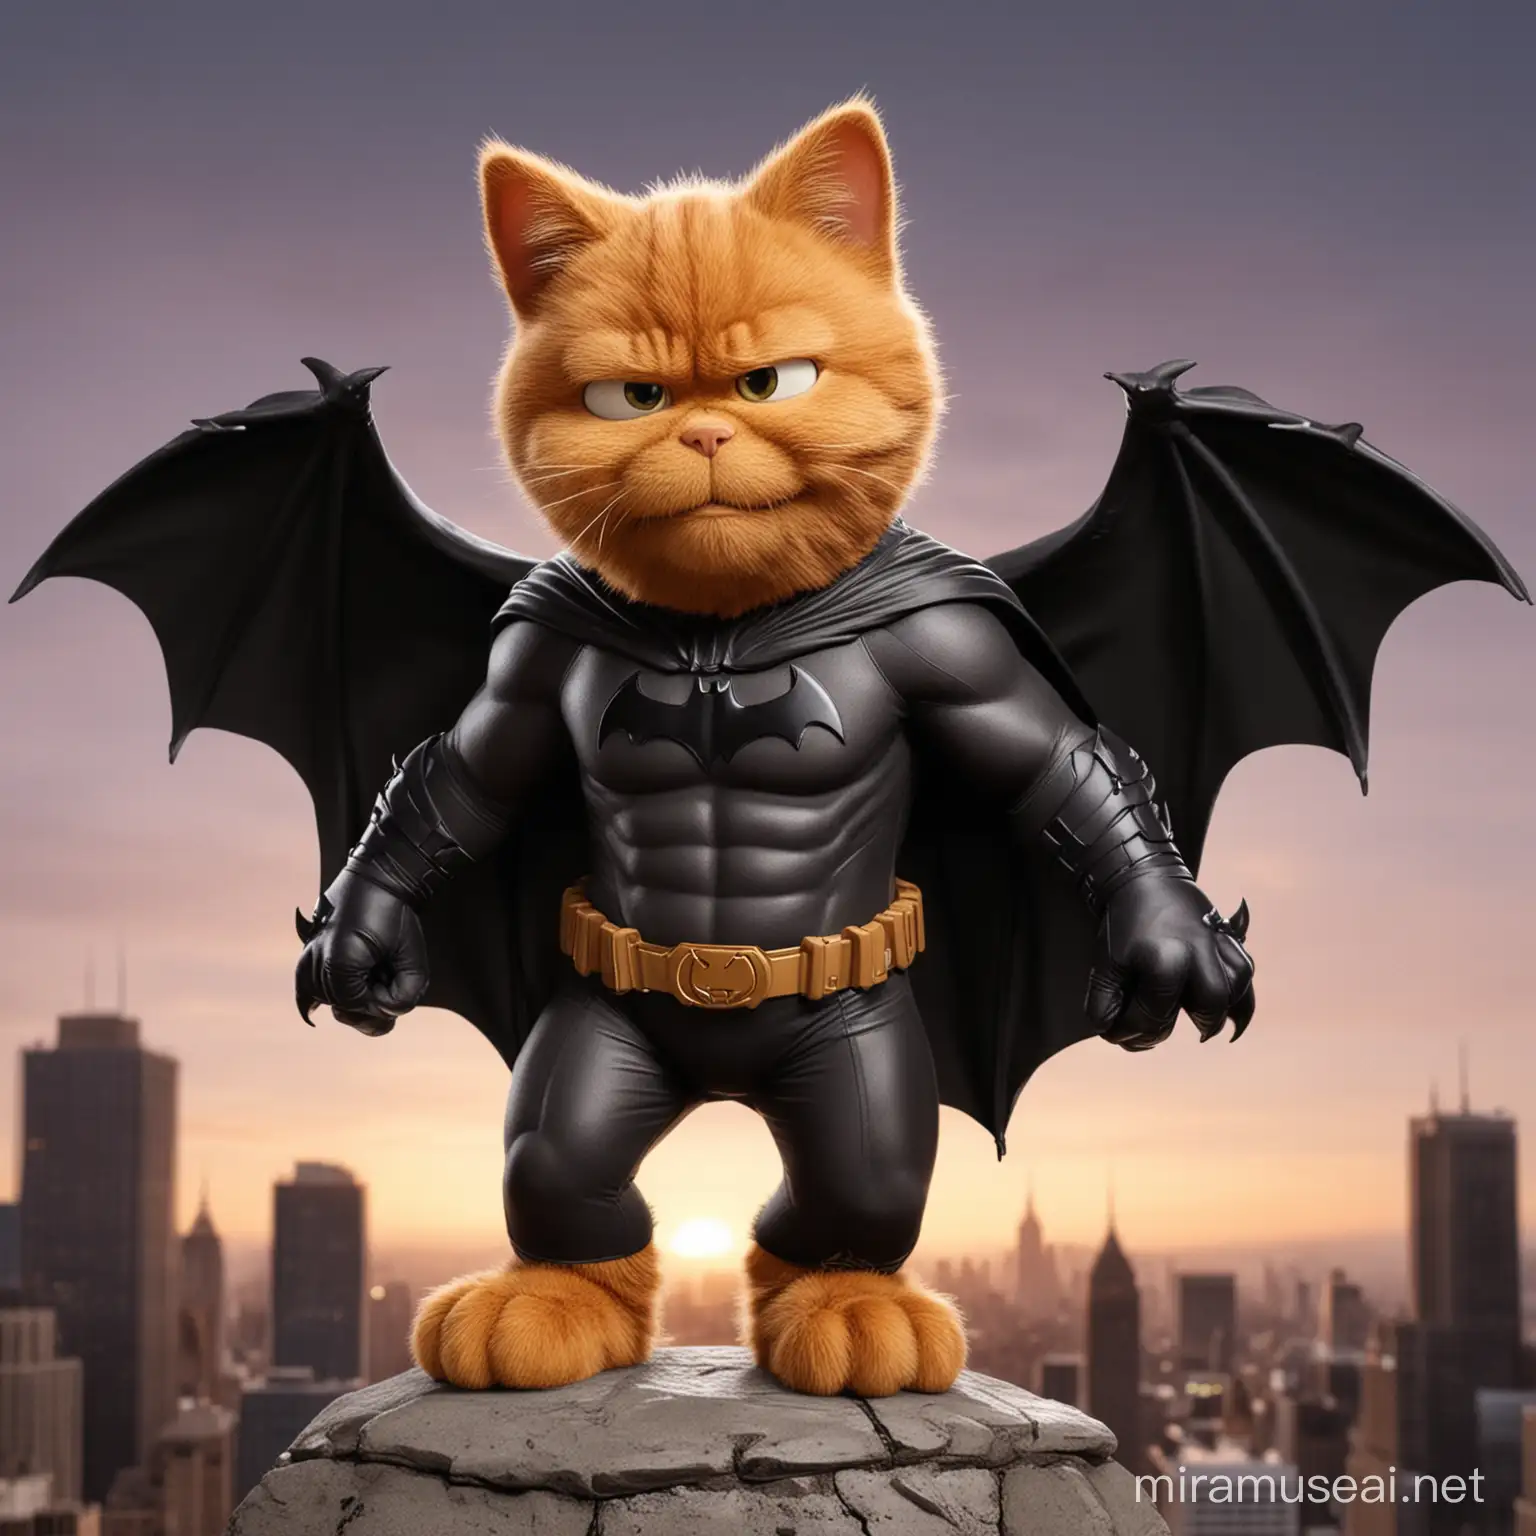 Garfield Cosplaying as Batman in Gotham City